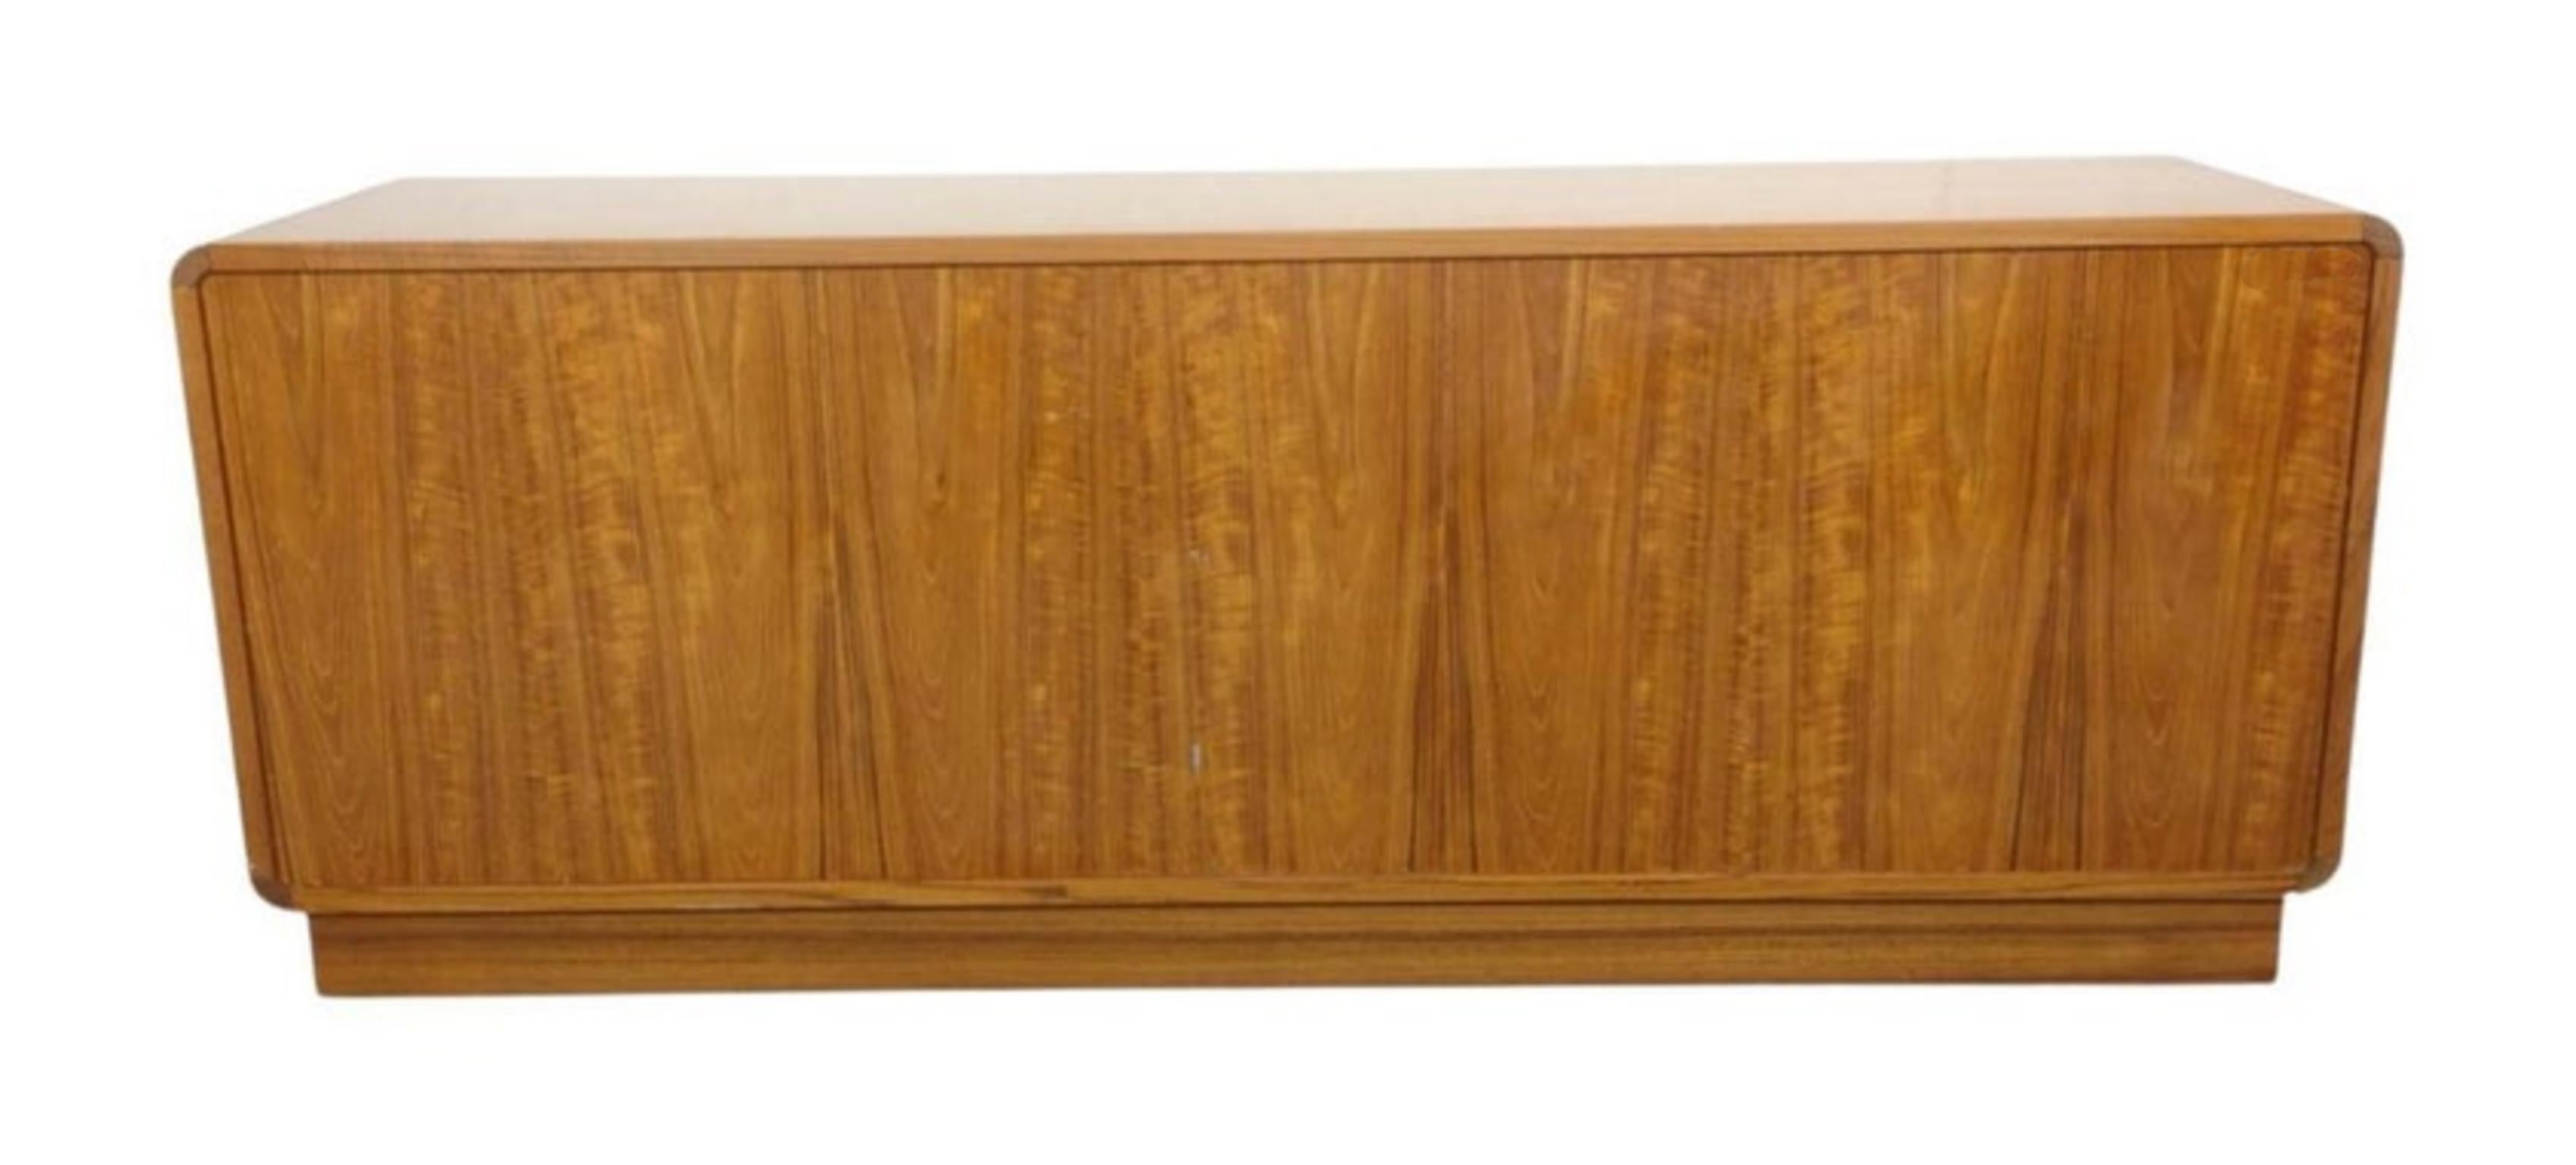 Woodwork Mid Century Danish Modern 9 Drawer Teak Dresser Credenza Rounded Corners